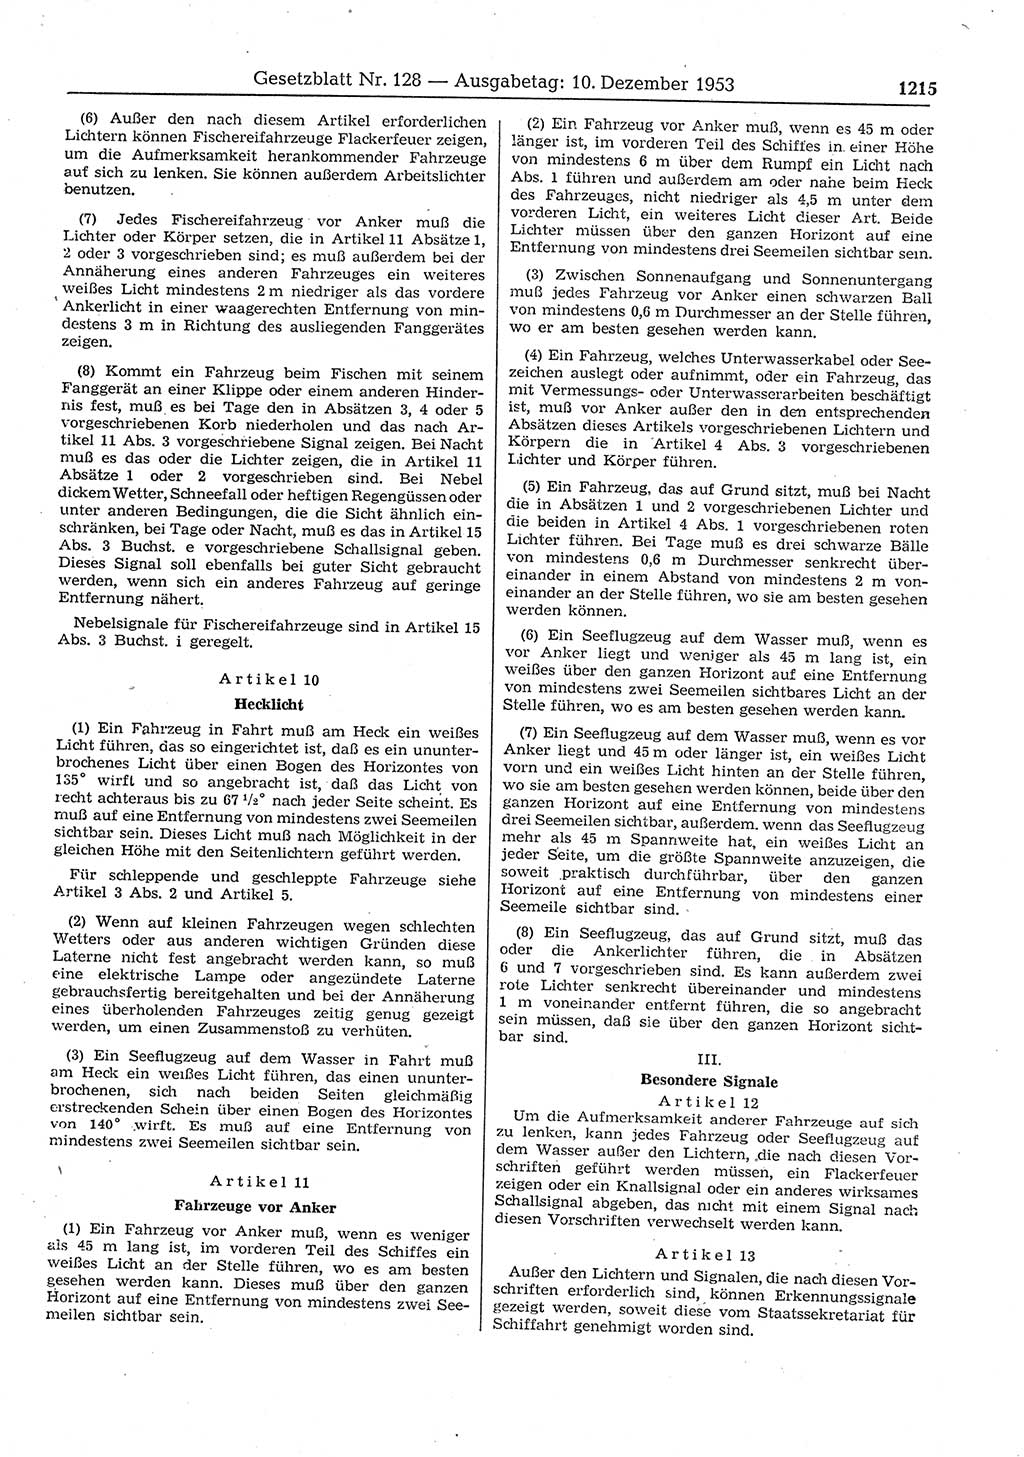 Gesetzblatt (GBl.) der Deutschen Demokratischen Republik (DDR) 1953, Seite 1215 (GBl. DDR 1953, S. 1215)